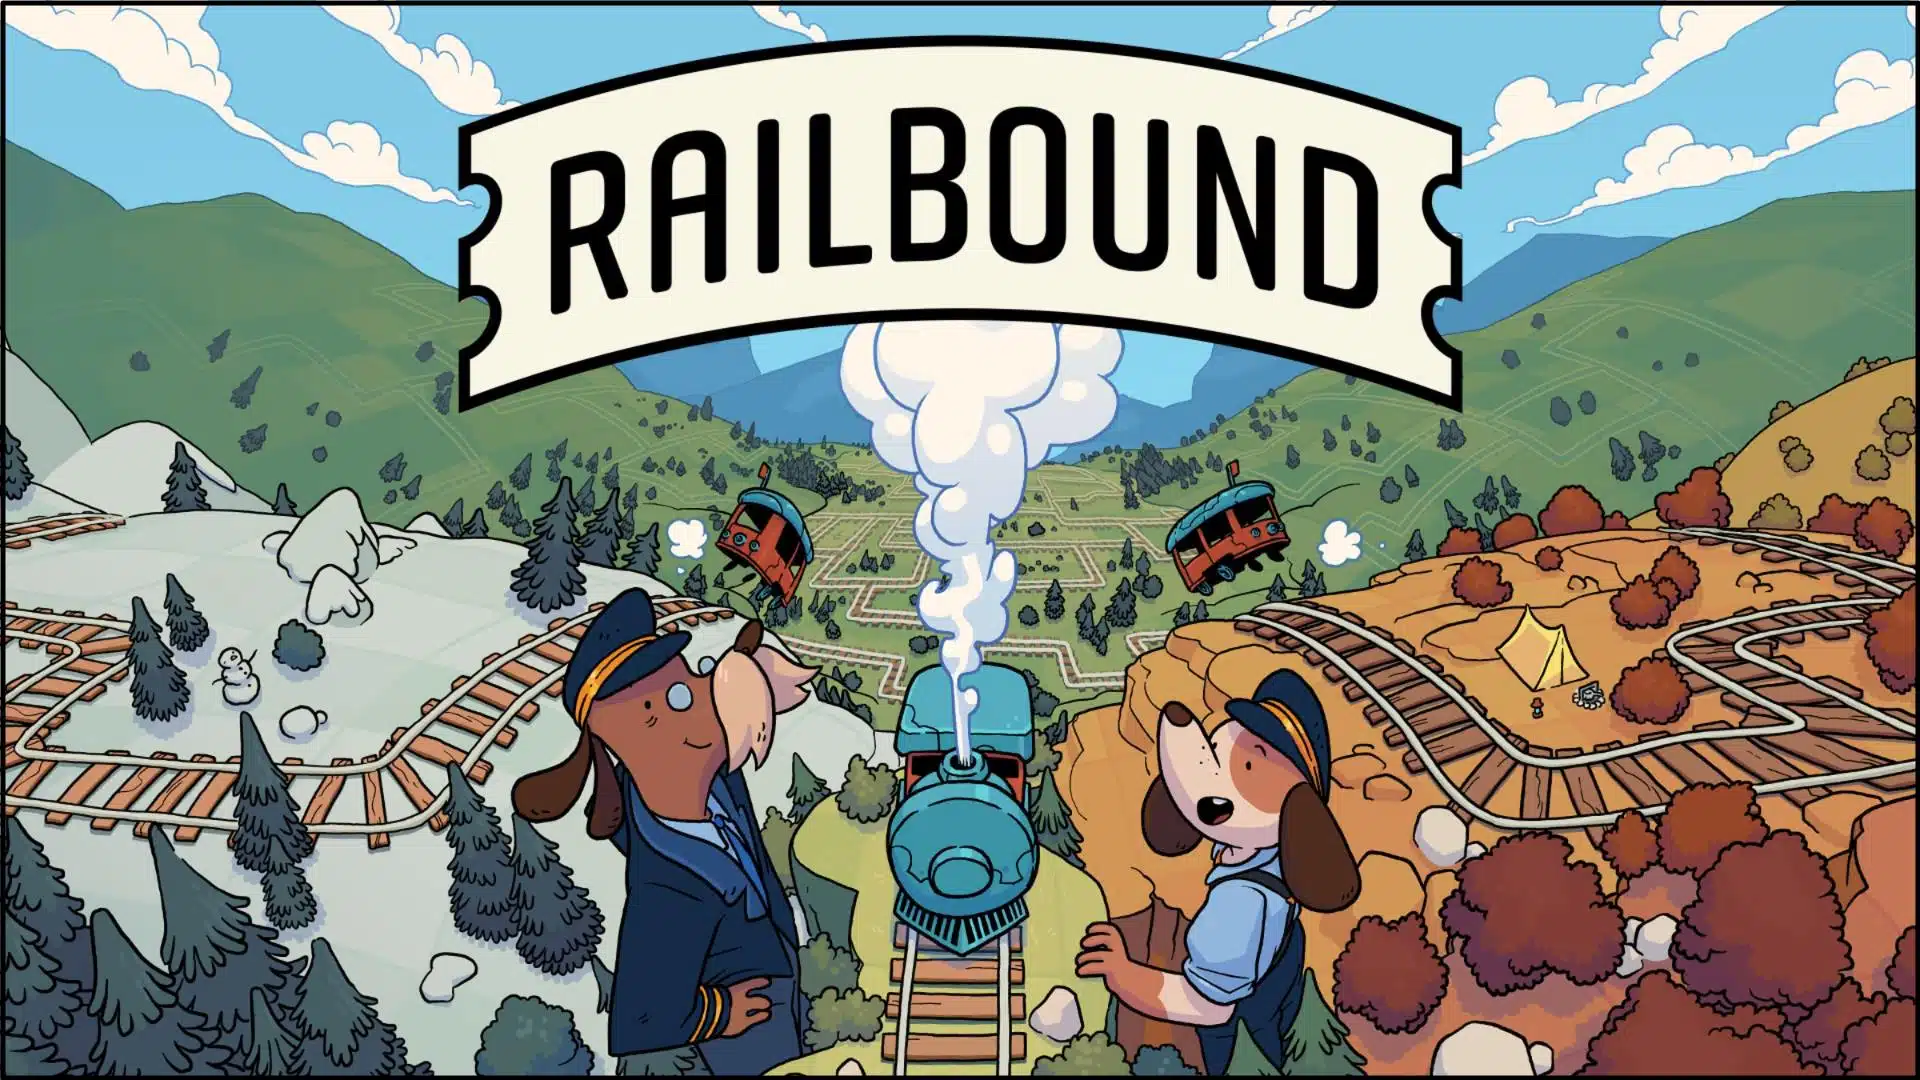 3 Railbound